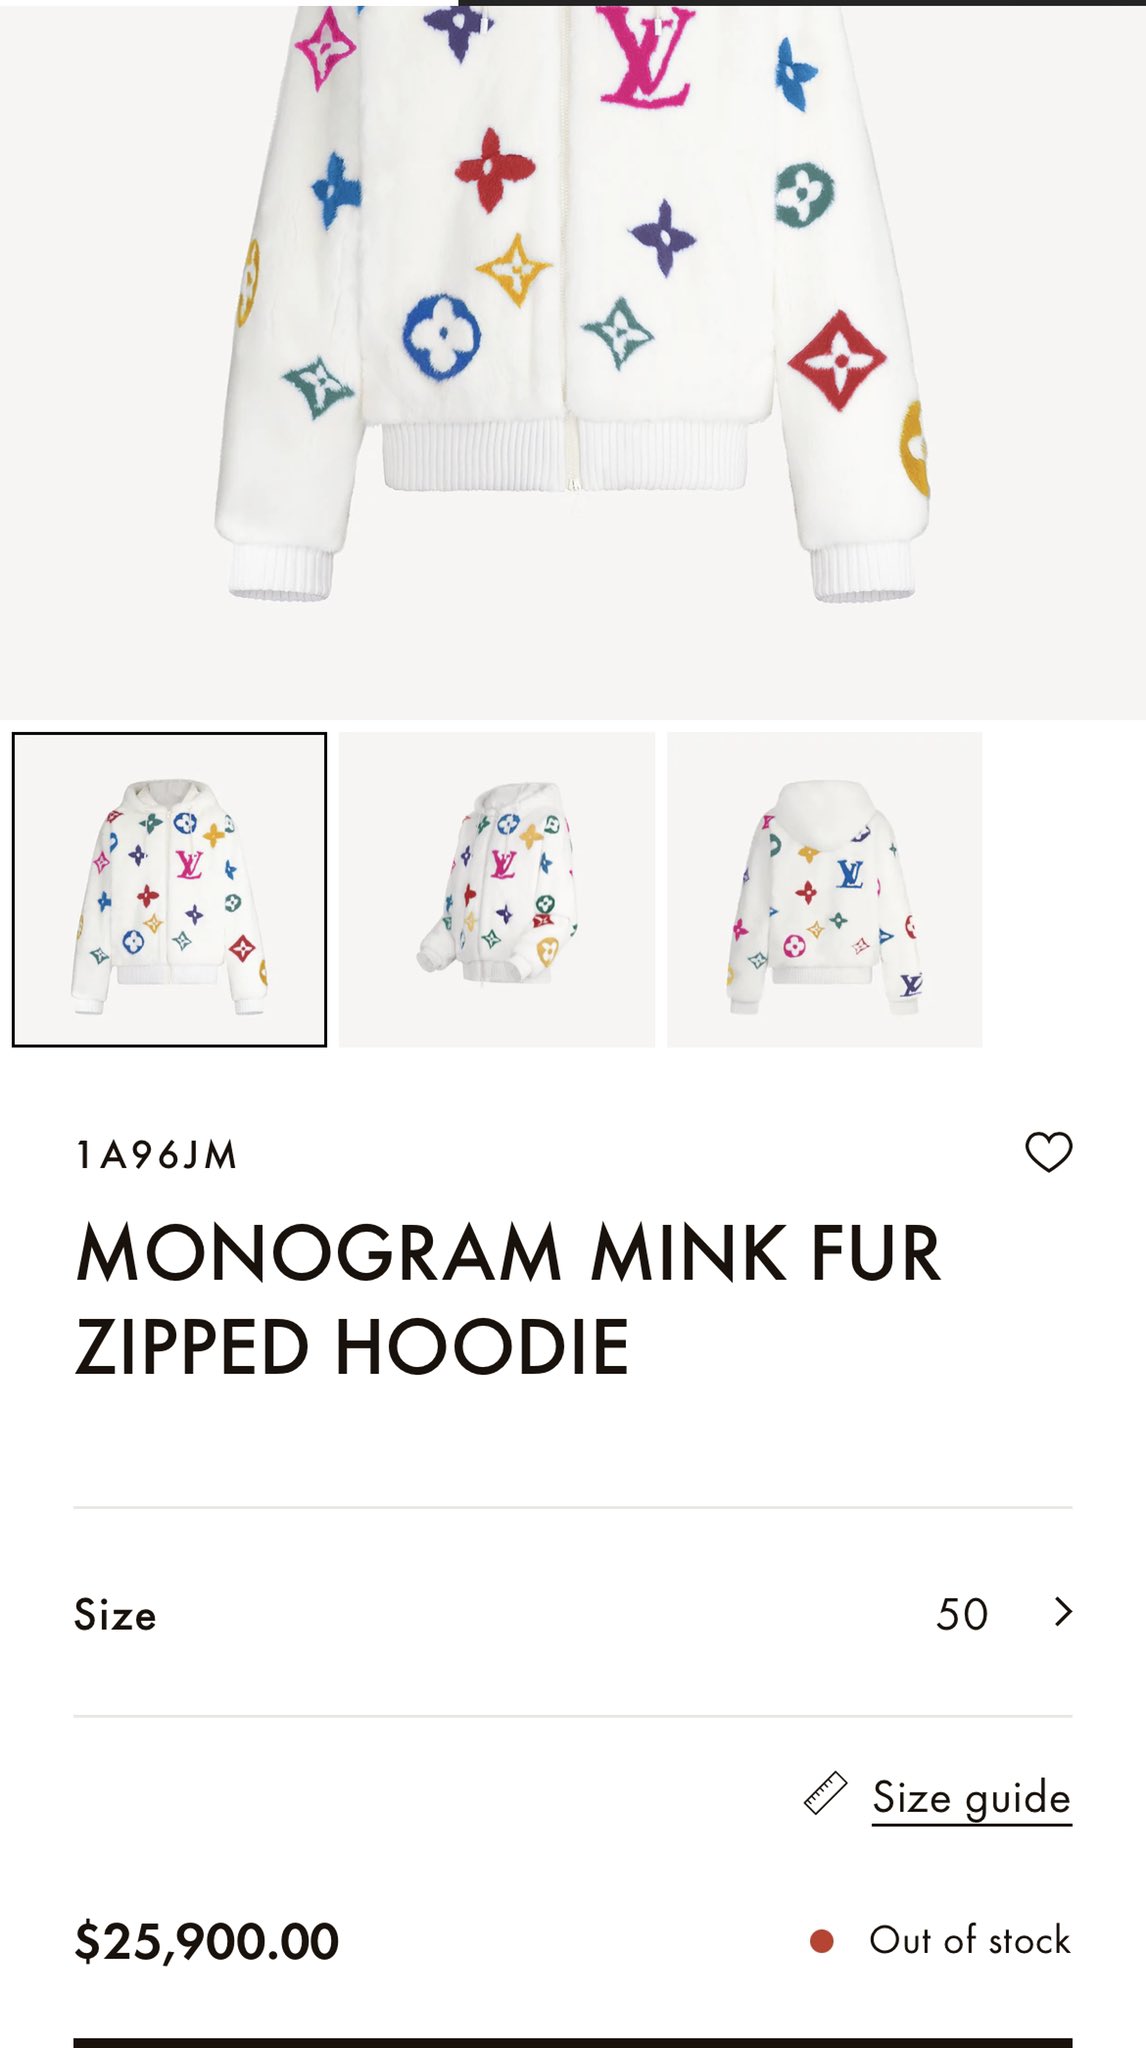 ORDER] Monogram Mink Fur Zipped Hoodie